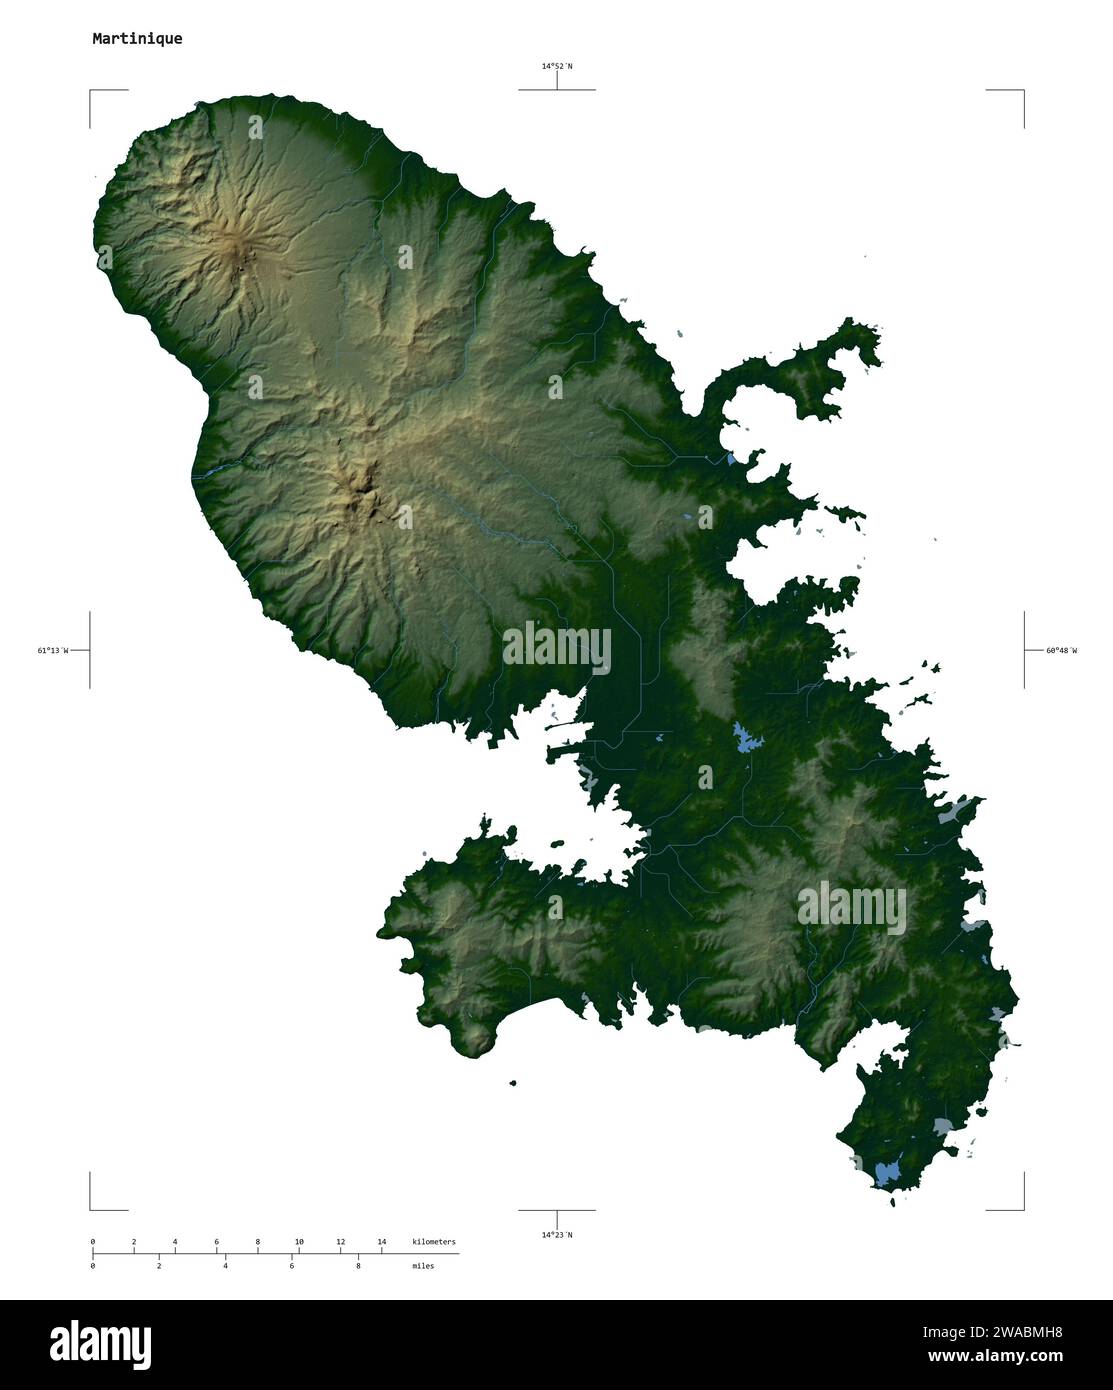 Forme d'une carte altimétrique en couleur avec les lacs et rivières de la Martinique, avec l'échelle de distance et les coordonnées de la frontière de la carte, isolé sur blanc Banque D'Images